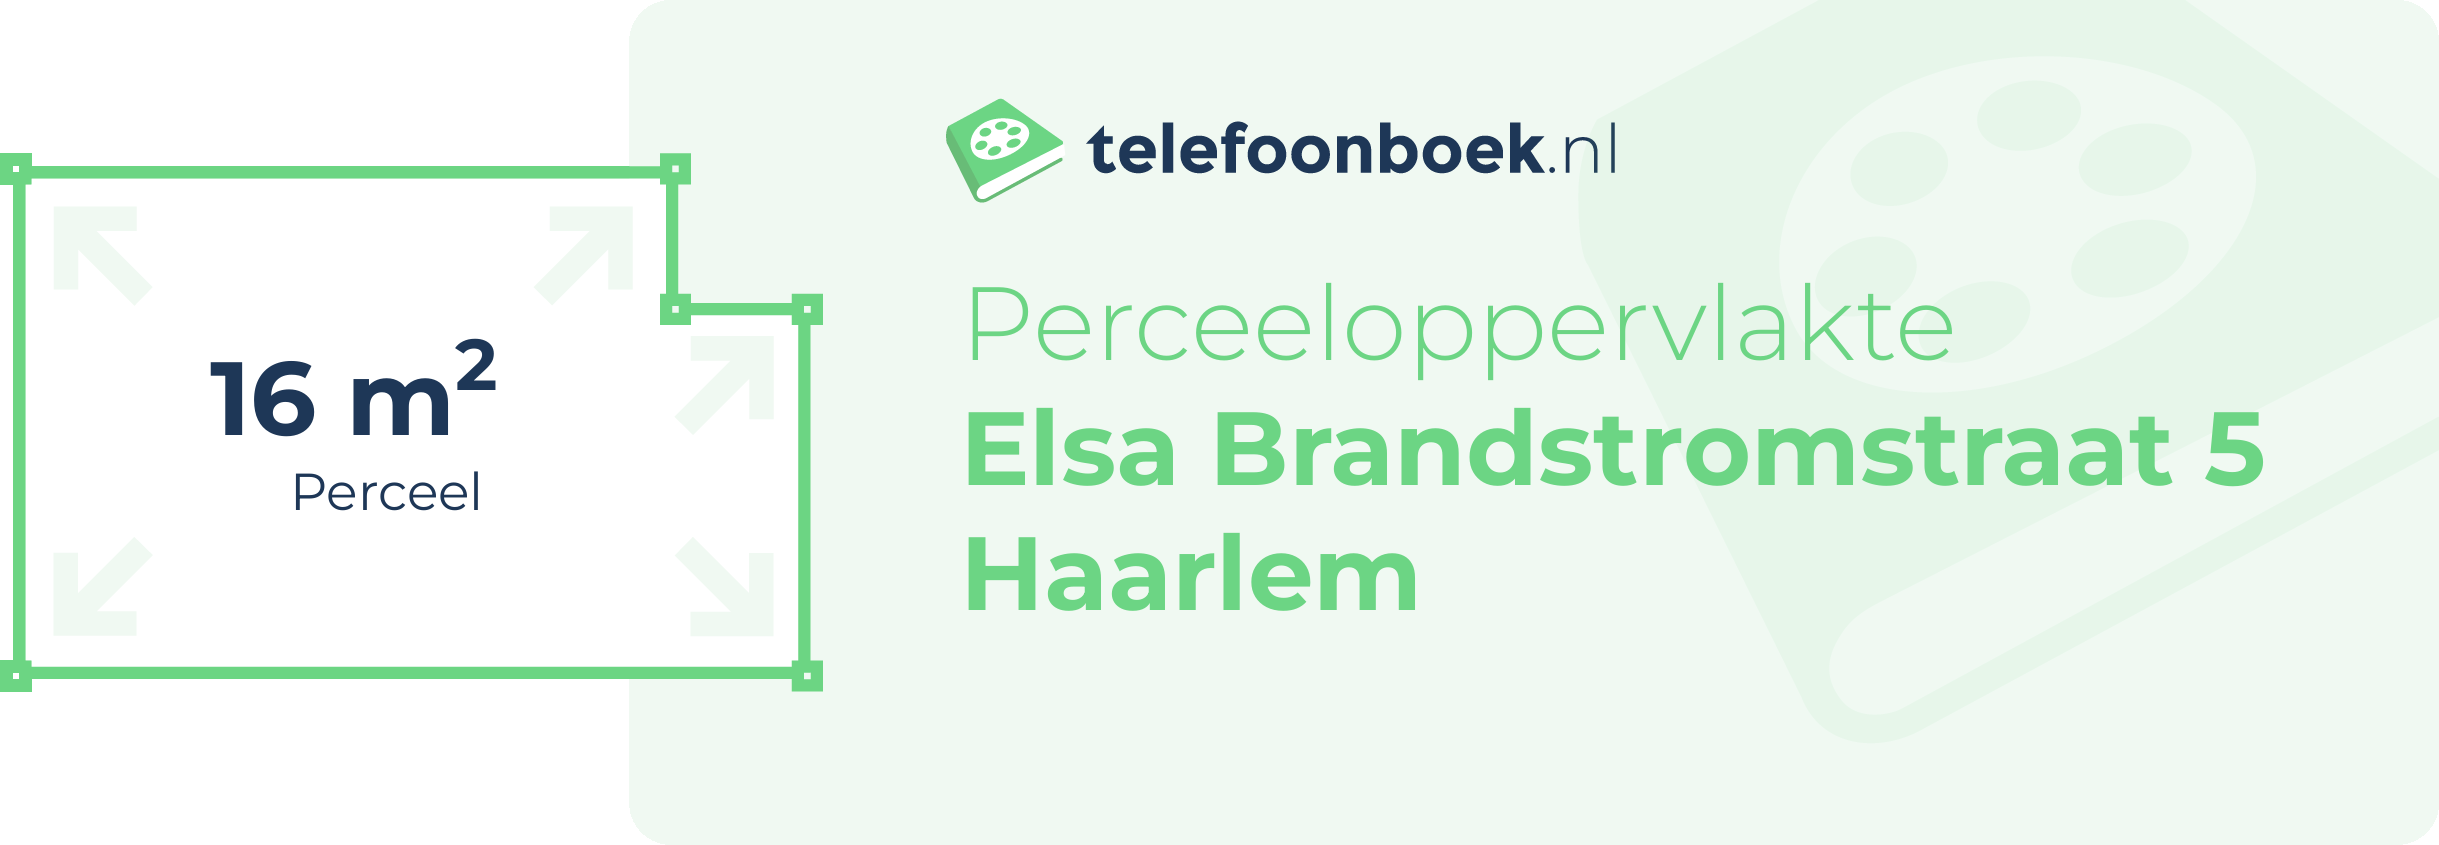 Perceeloppervlakte Elsa Brandstromstraat 5 Haarlem